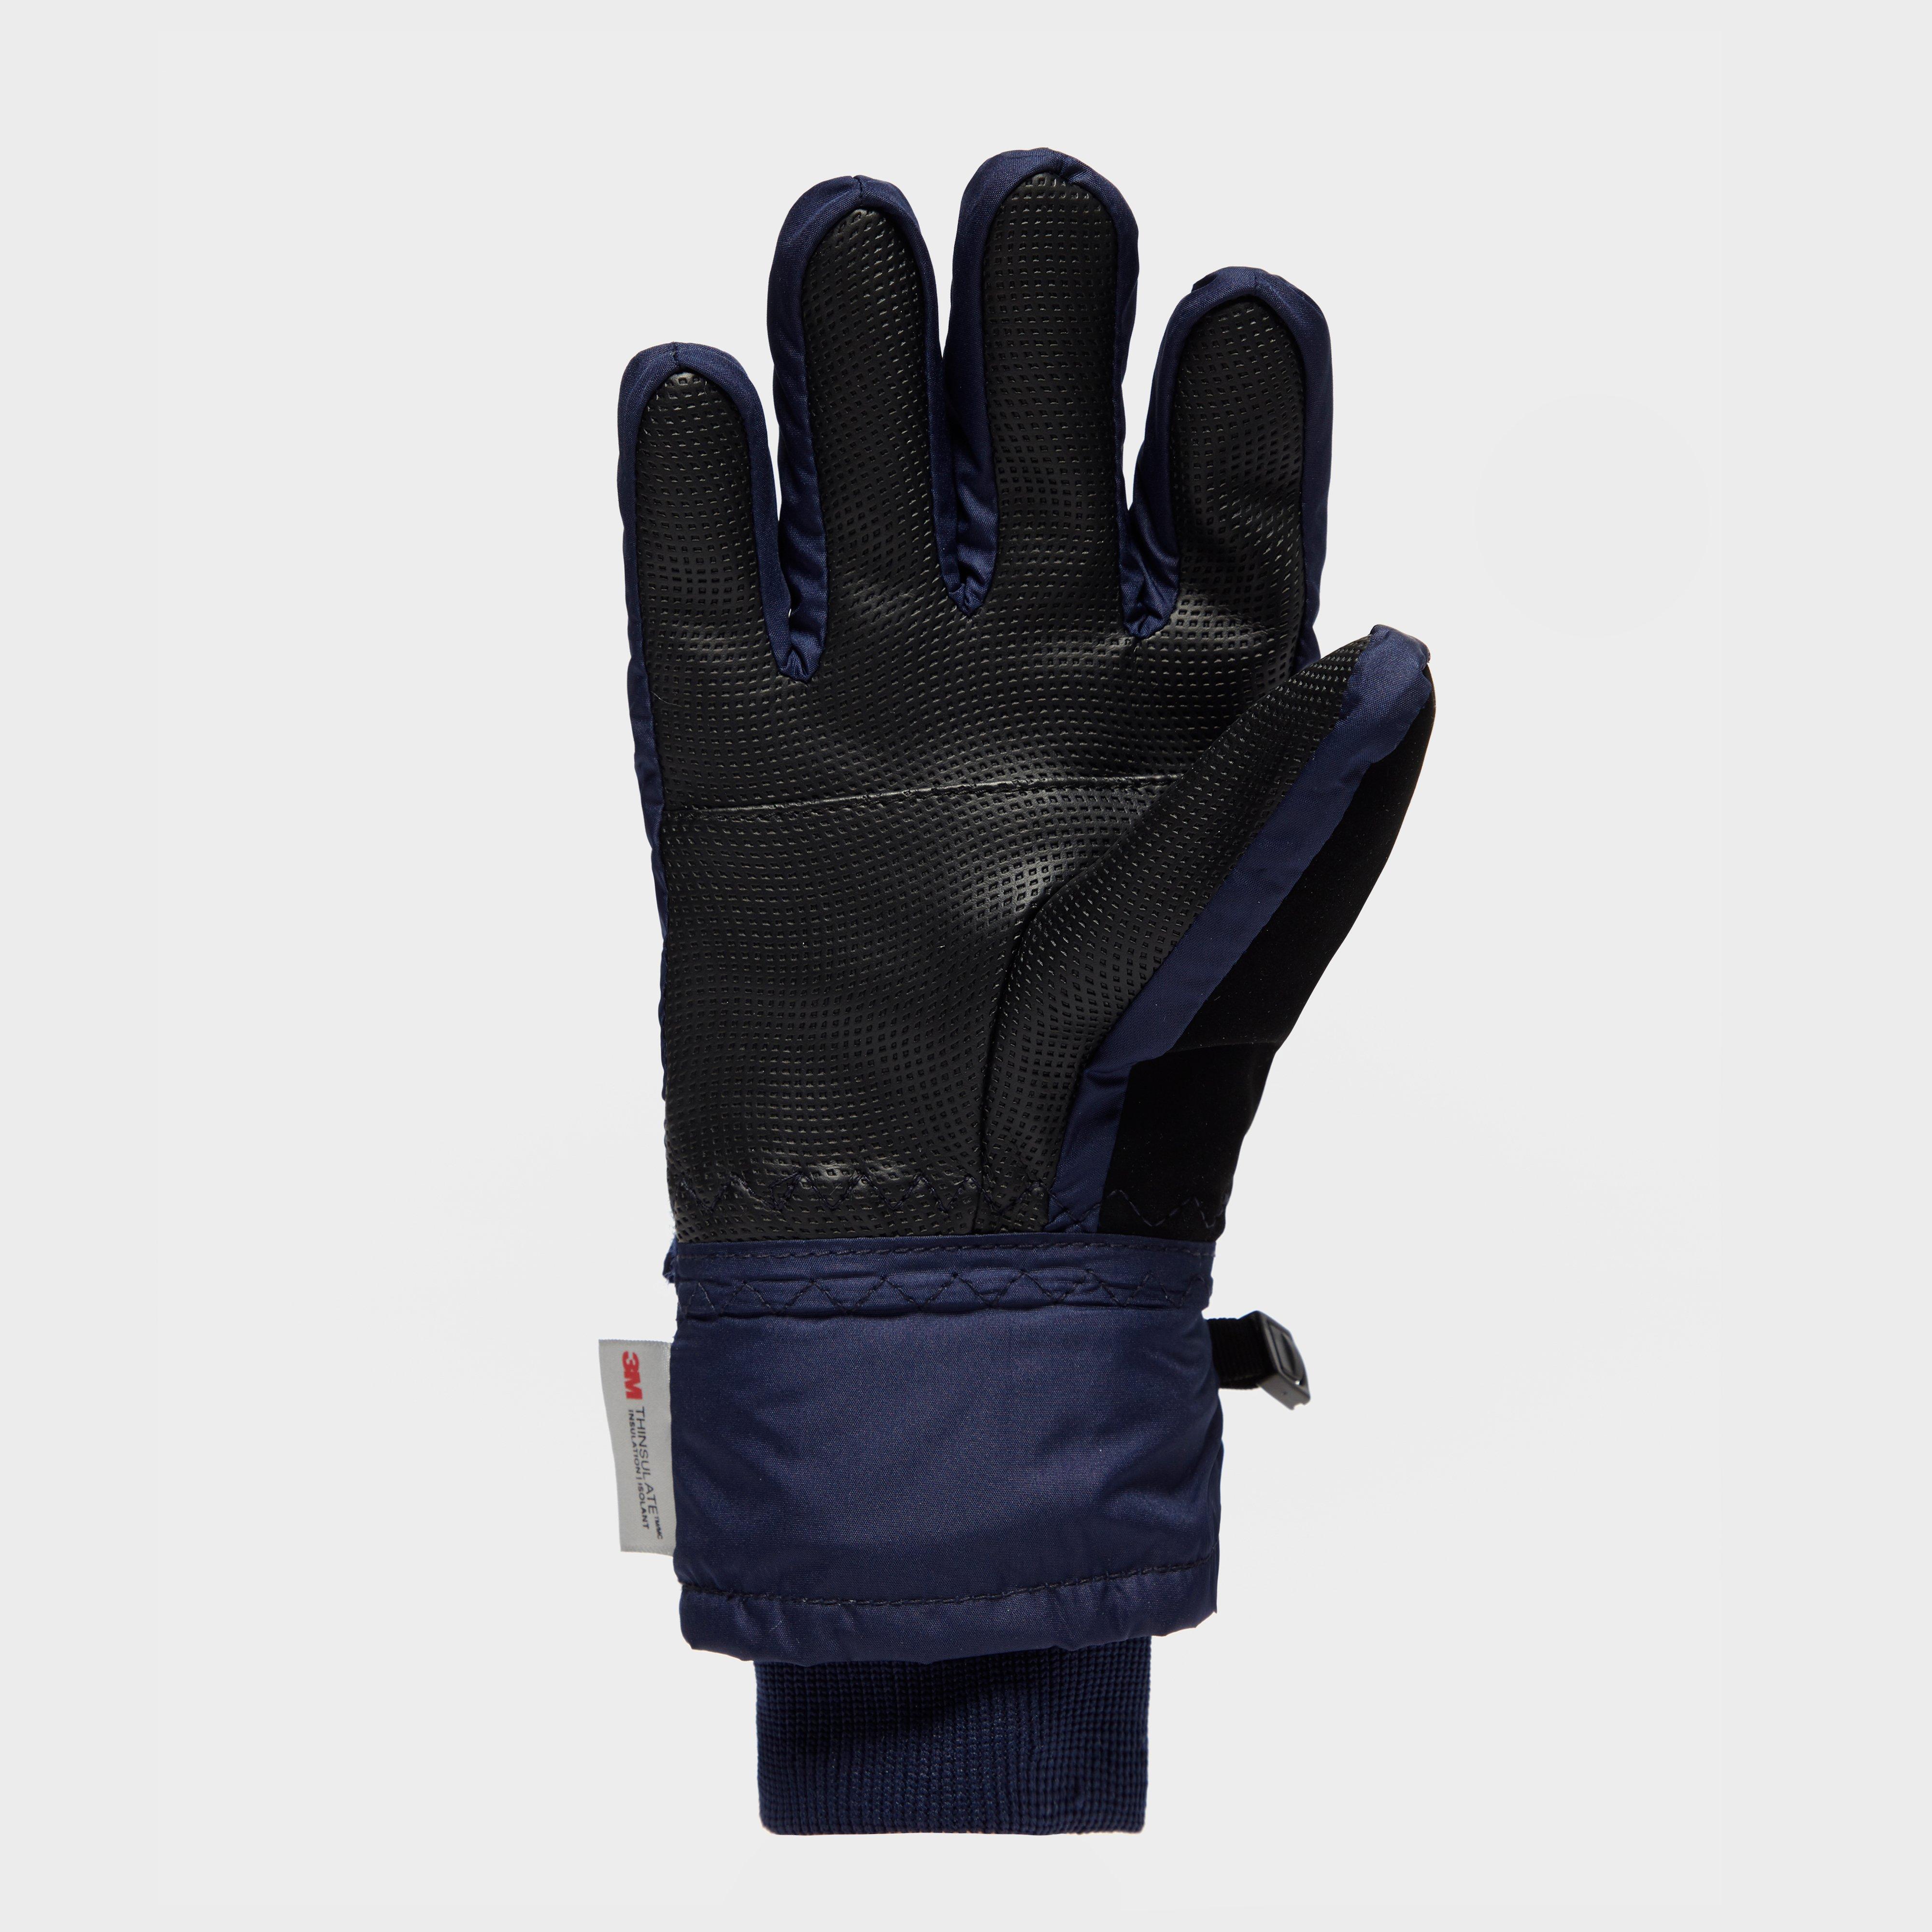 Peter Storm Kid's Waterproof Gloves Review